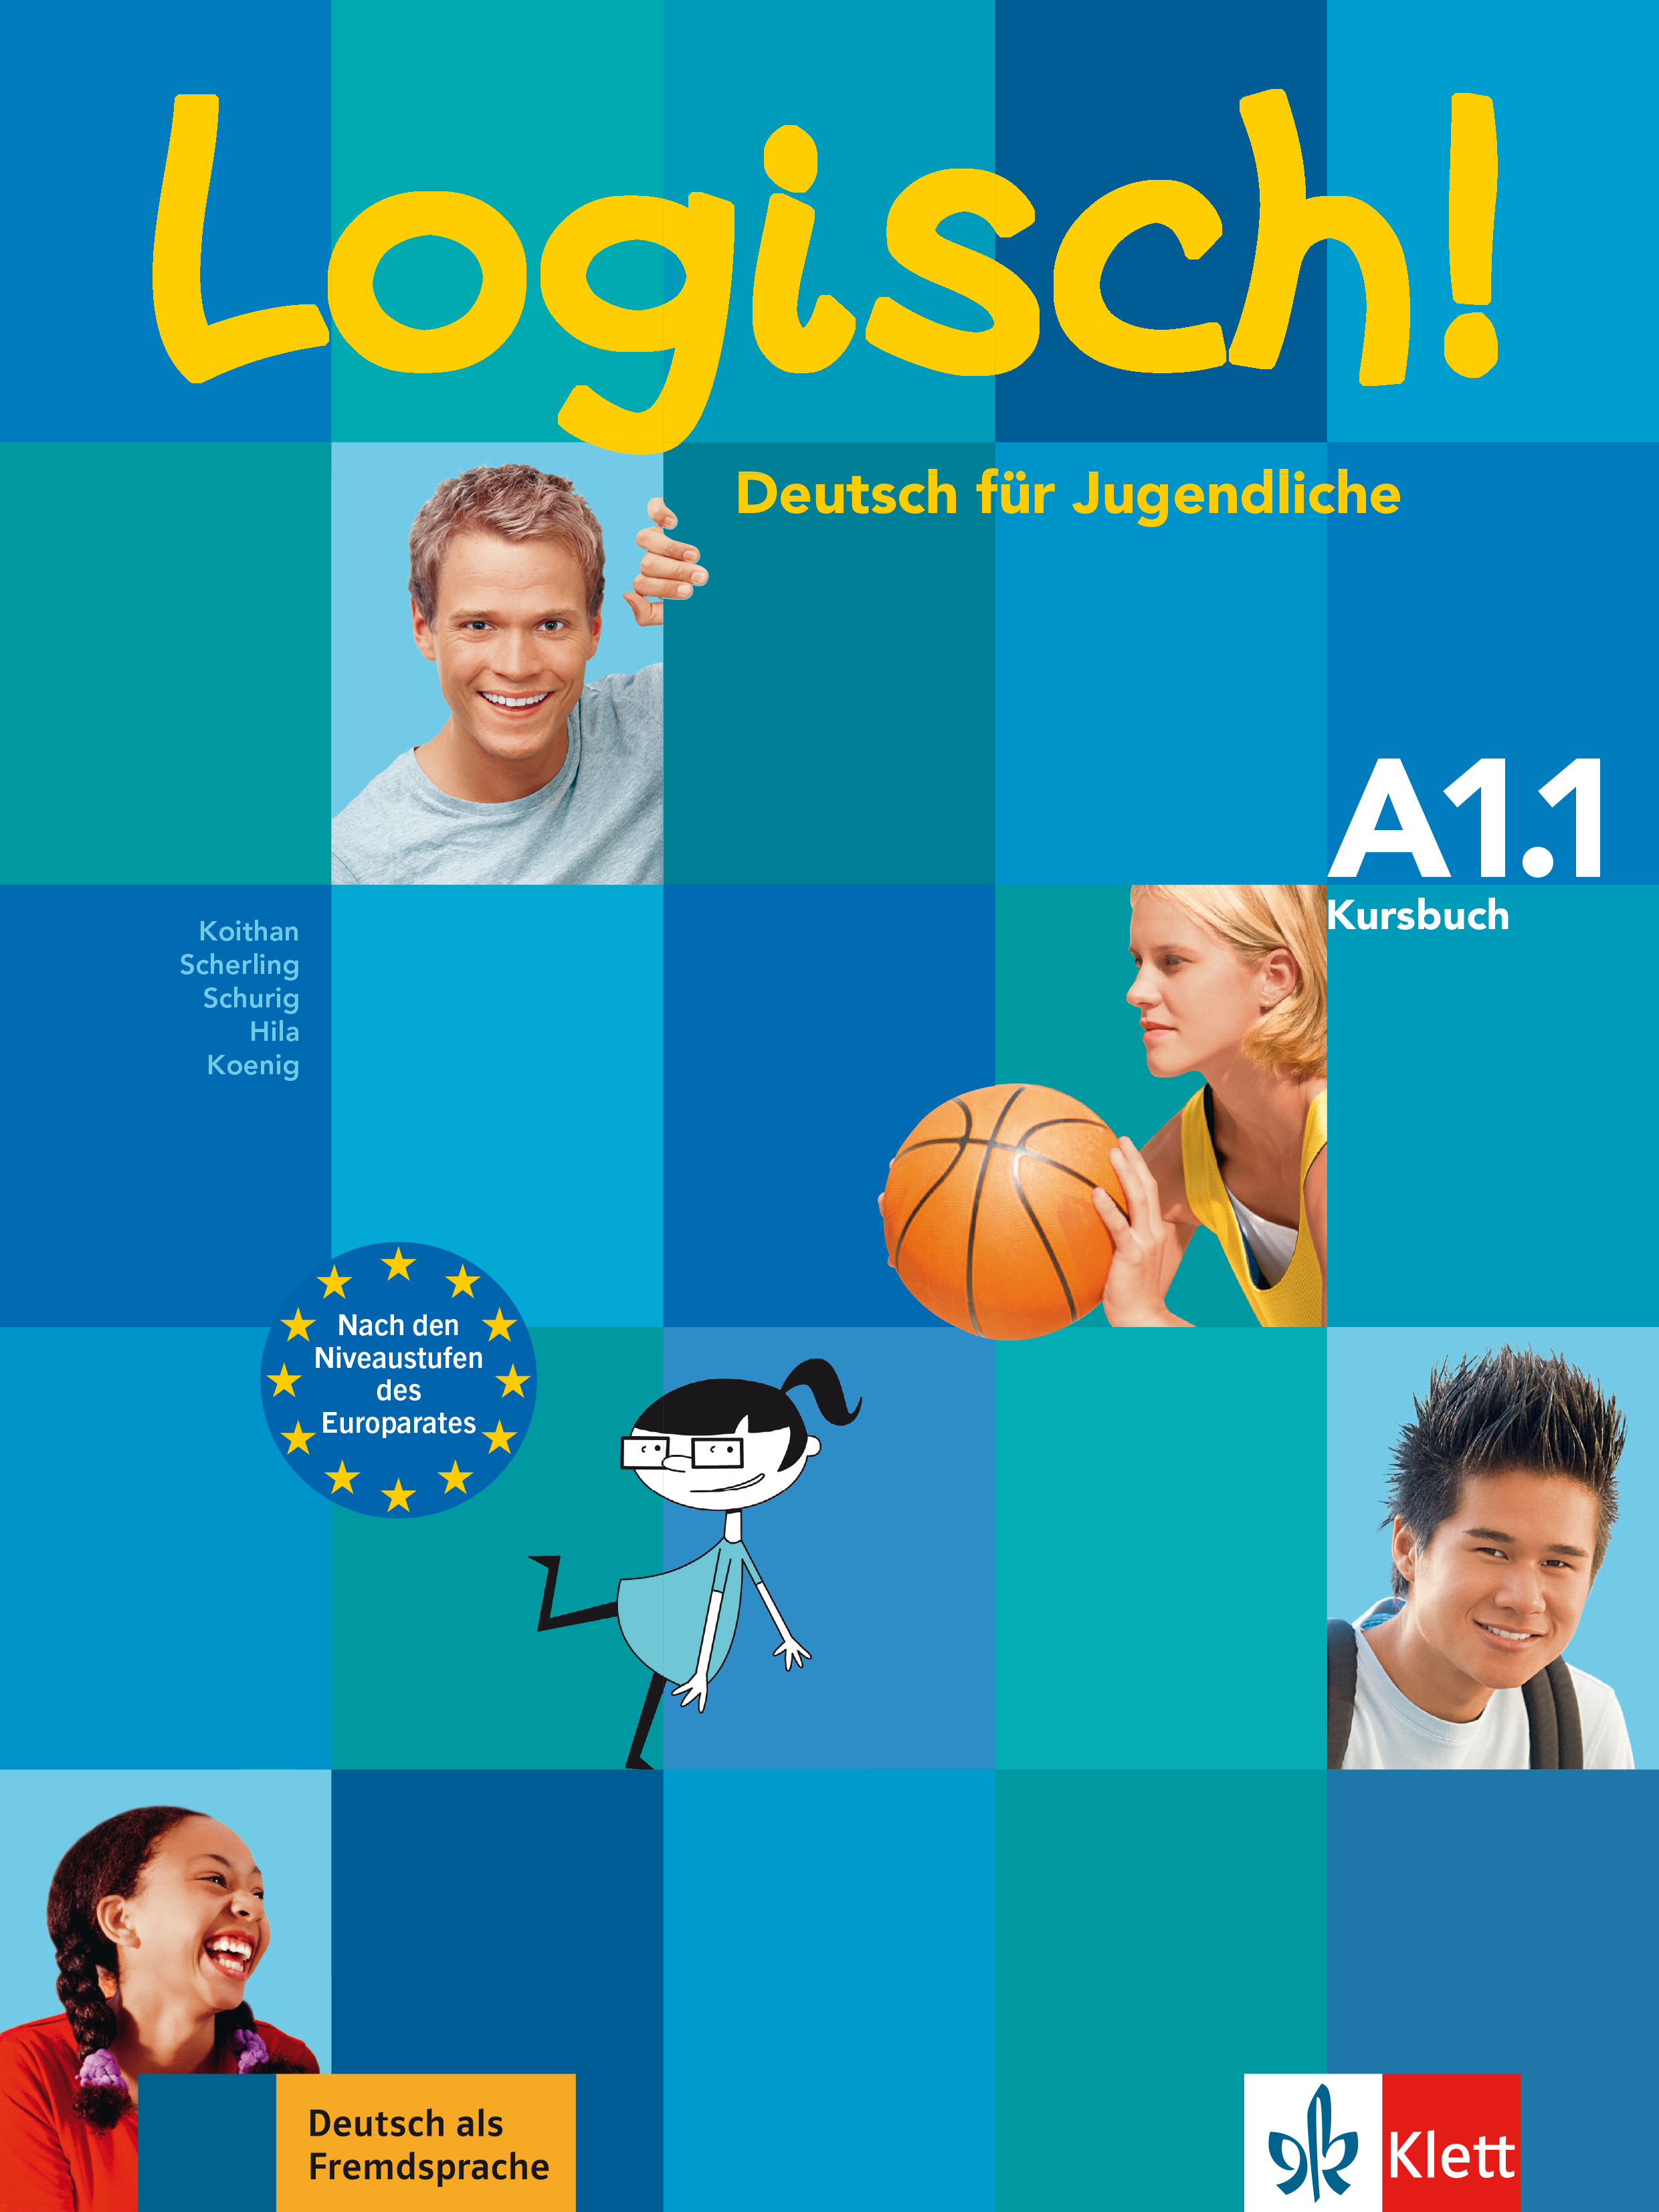 Logisch! A1.1 Kursbuch